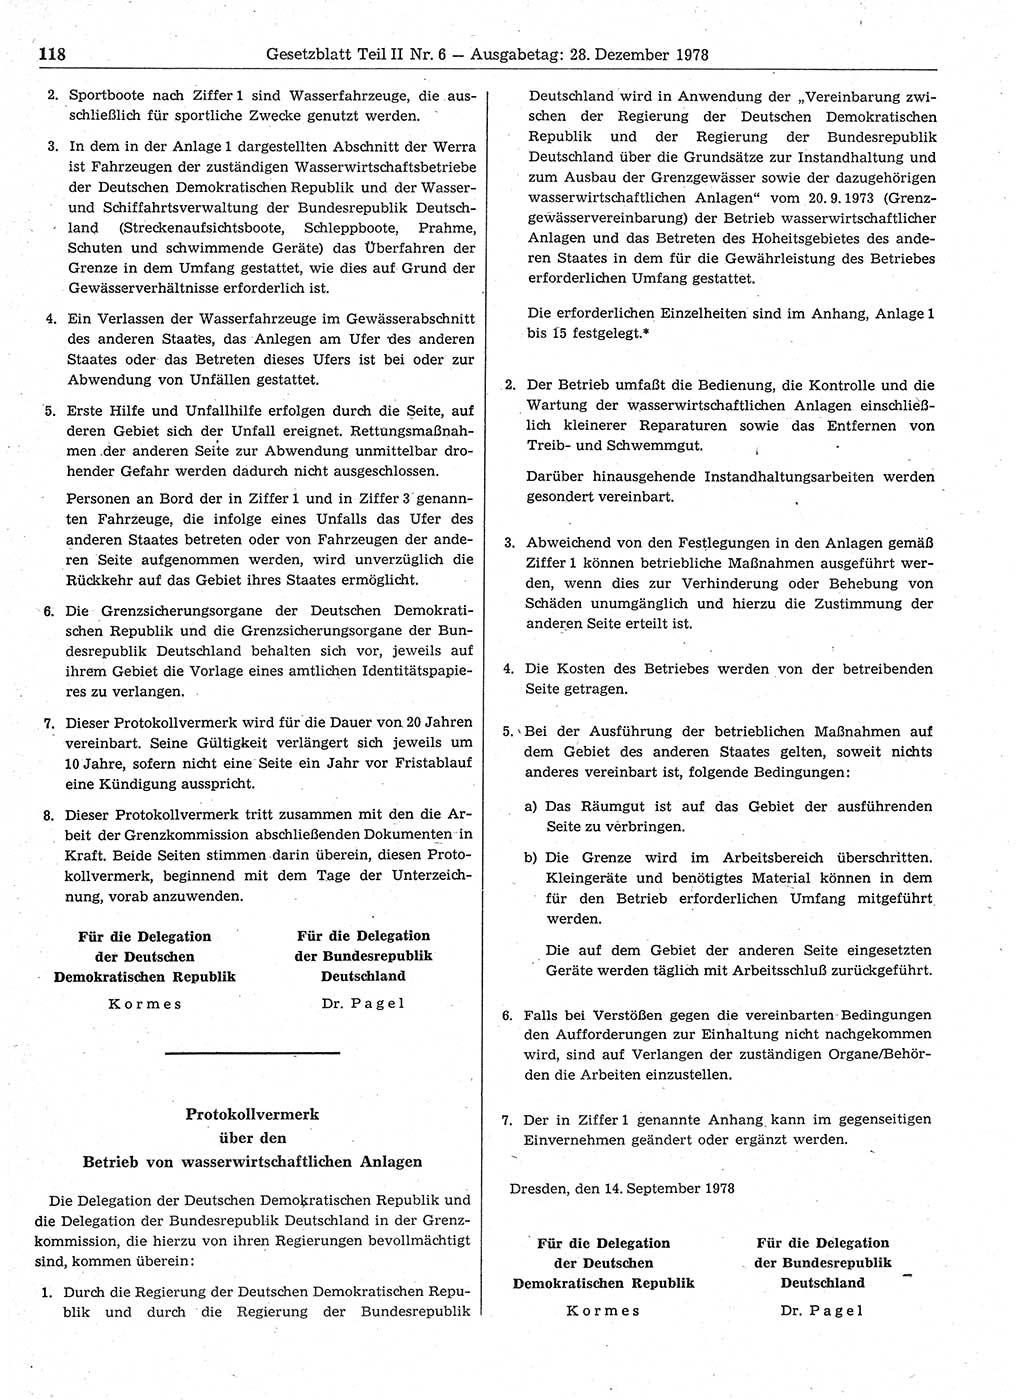 Gesetzblatt (GBl.) der Deutschen Demokratischen Republik (DDR) Teil ⅠⅠ 1978, Seite 118 (GBl. DDR ⅠⅠ 1978, S. 118)